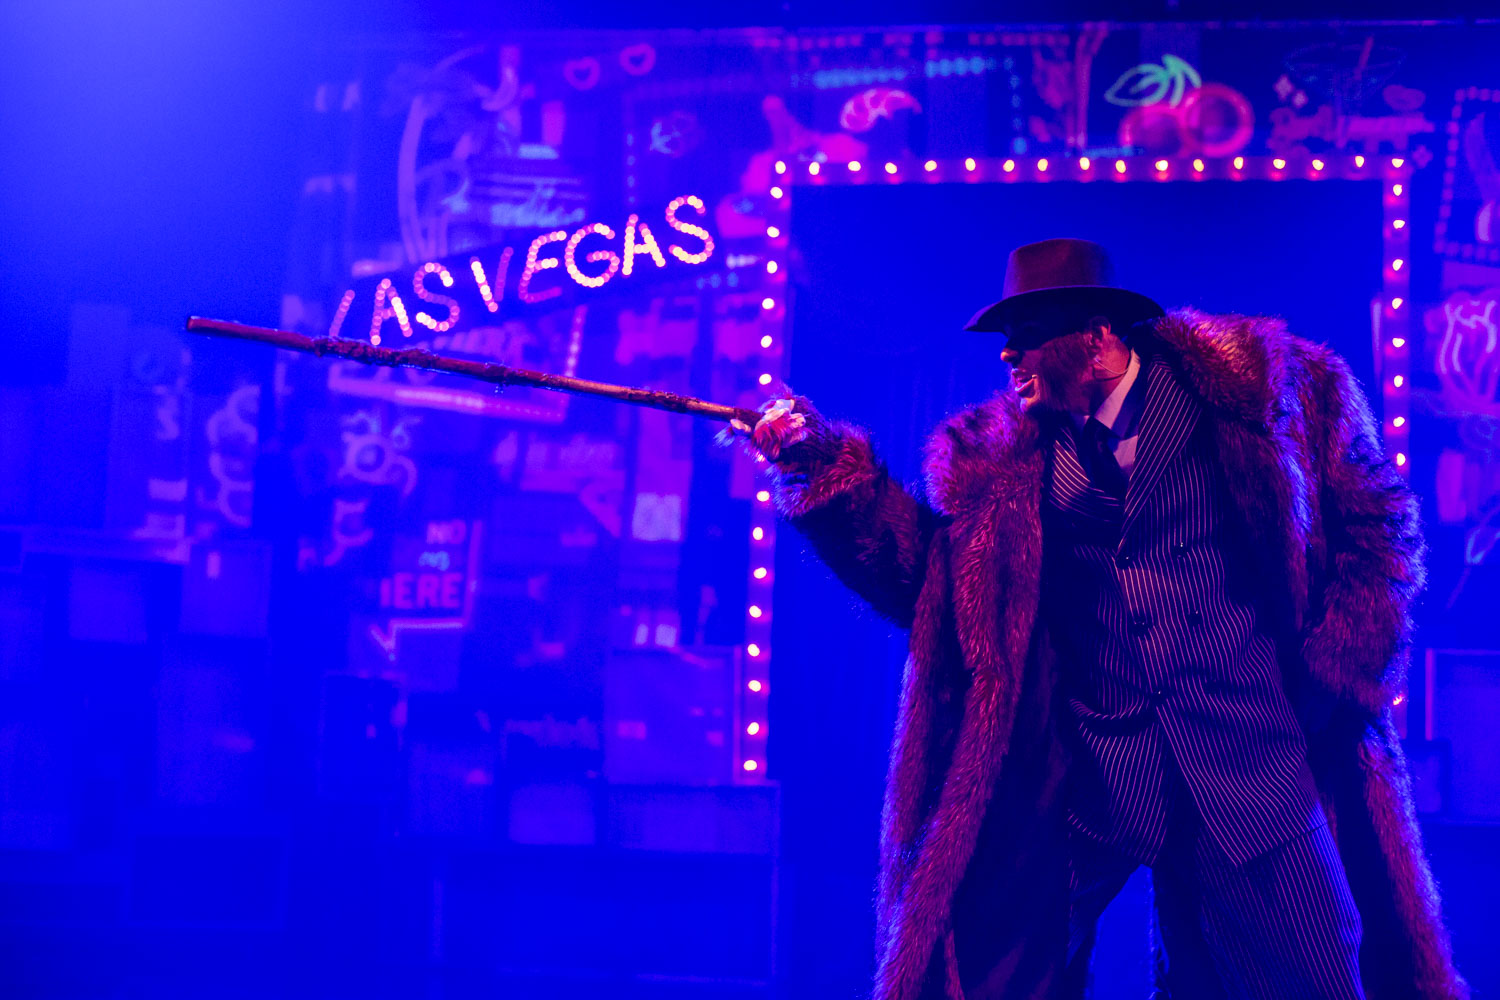 Scena oświetlona niebieskim światłem. Na środku stoi mężczyzna w garniturze i futrze, w ręku trzyma laskę. W oddali widać podświetlony napis " Las Vegas"